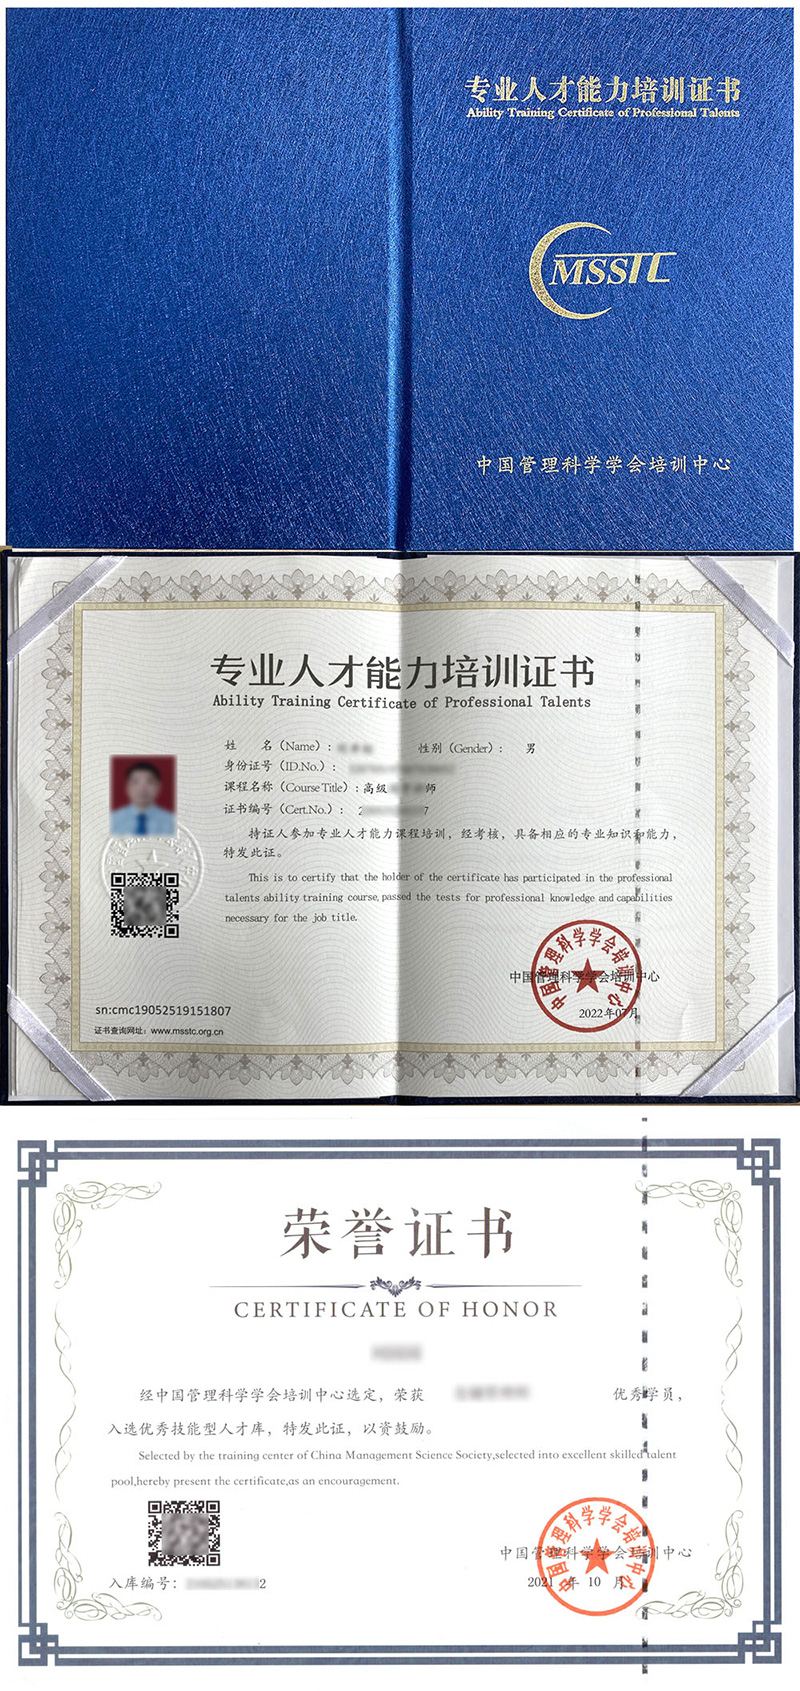 中国管理科学学会培训中心 专业人才能力培训证书 园艺师证证书样本